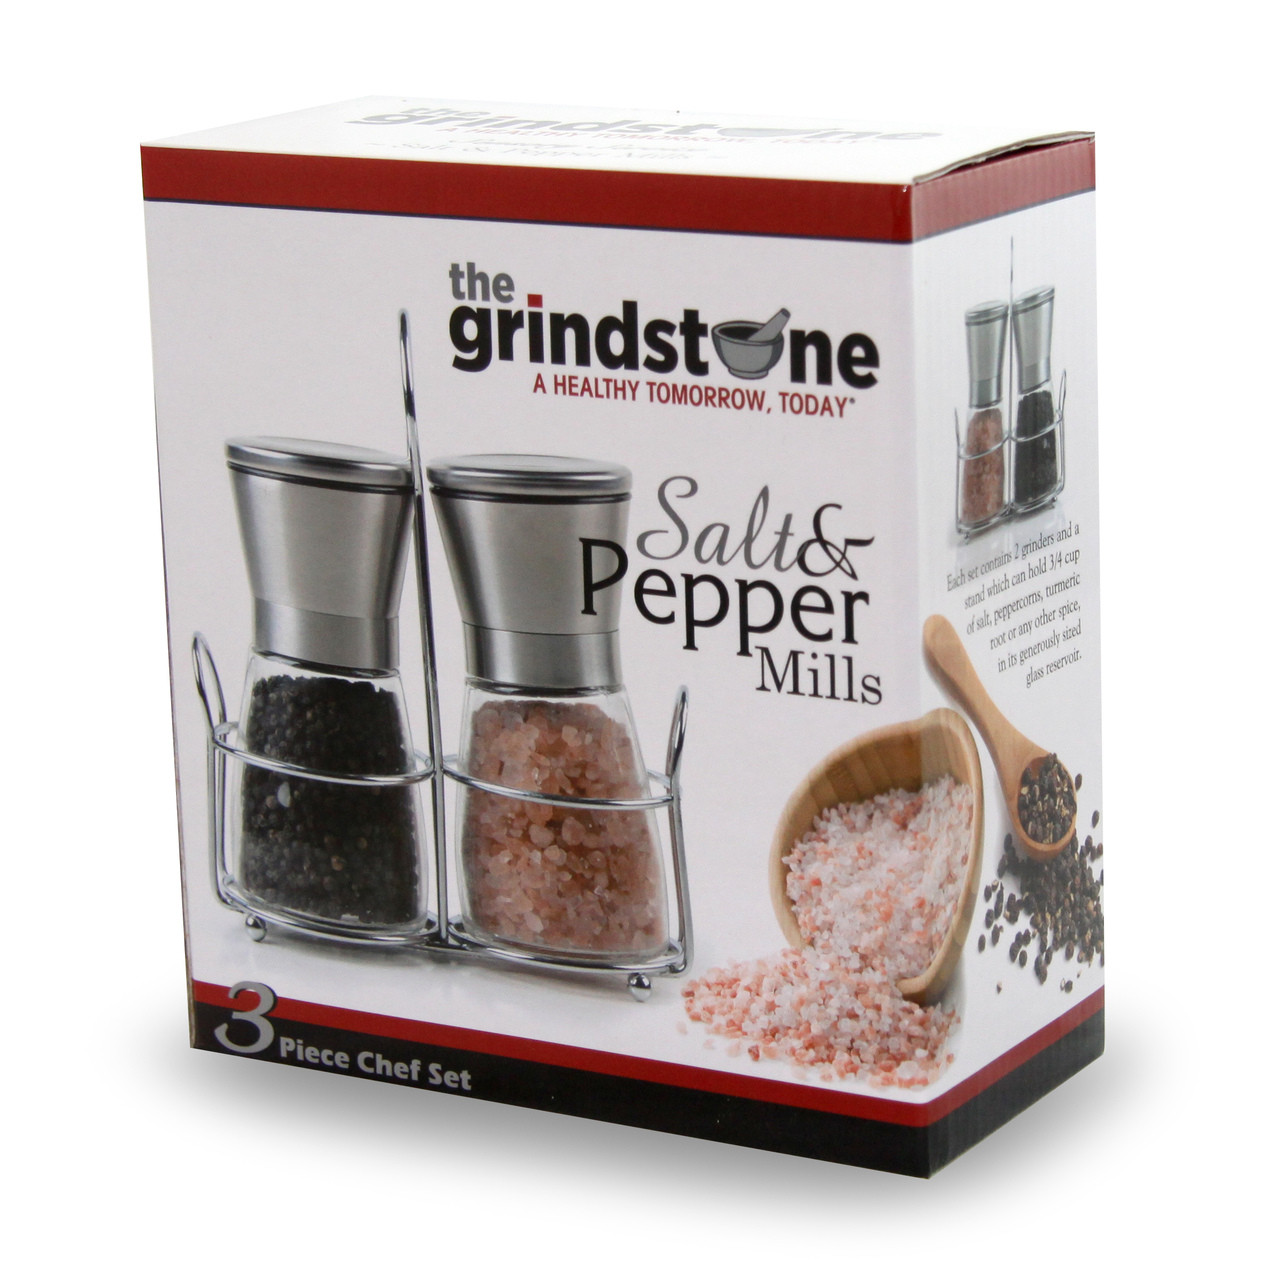 Salt and Pepper Grinder Set of 3